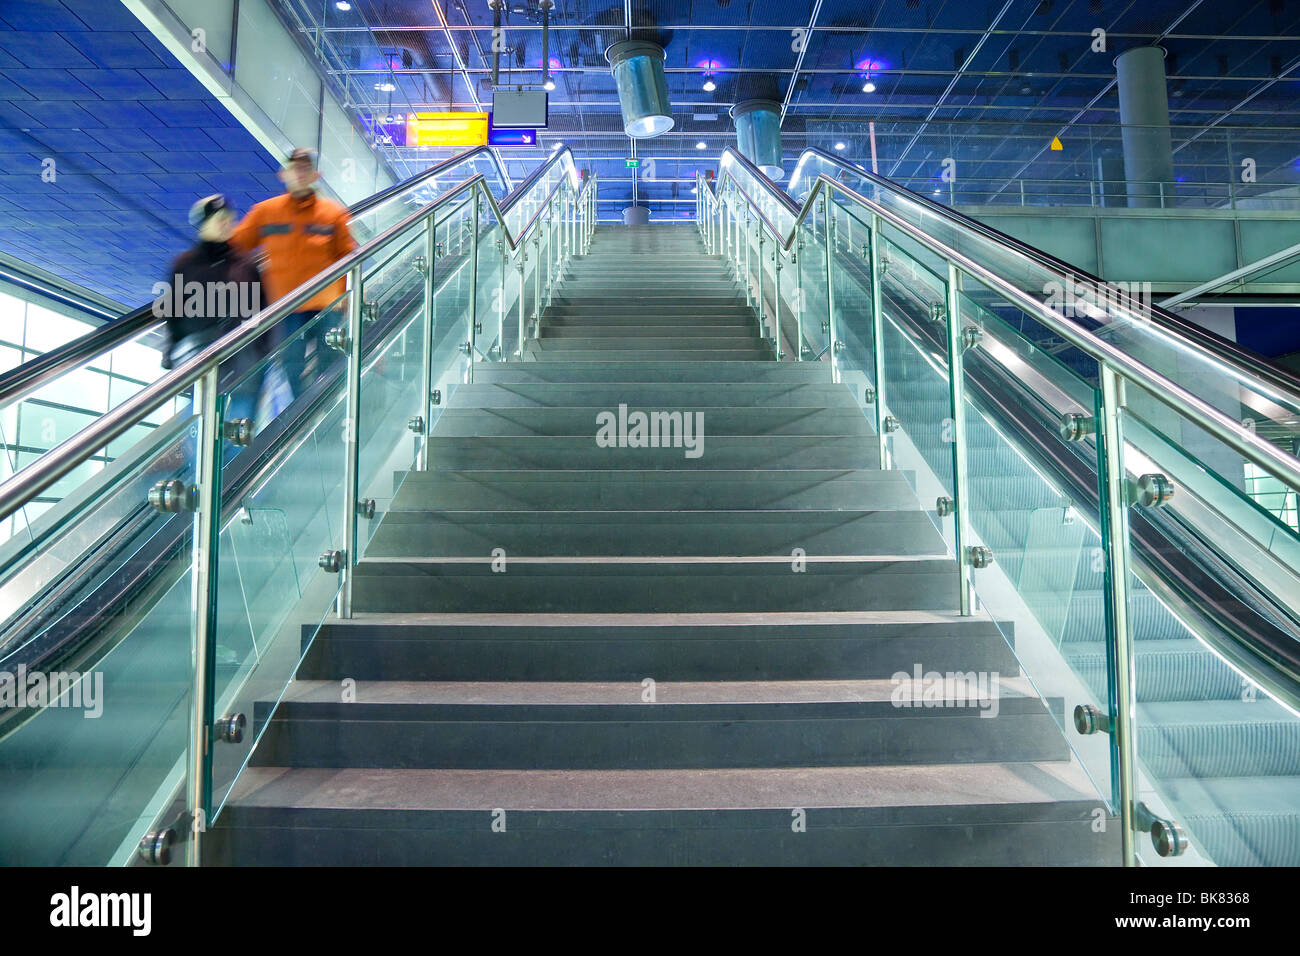 L'Europe, Allemagne, Berlin, gare moderne - escalator et escalier menant à la plate-forme. Banque D'Images